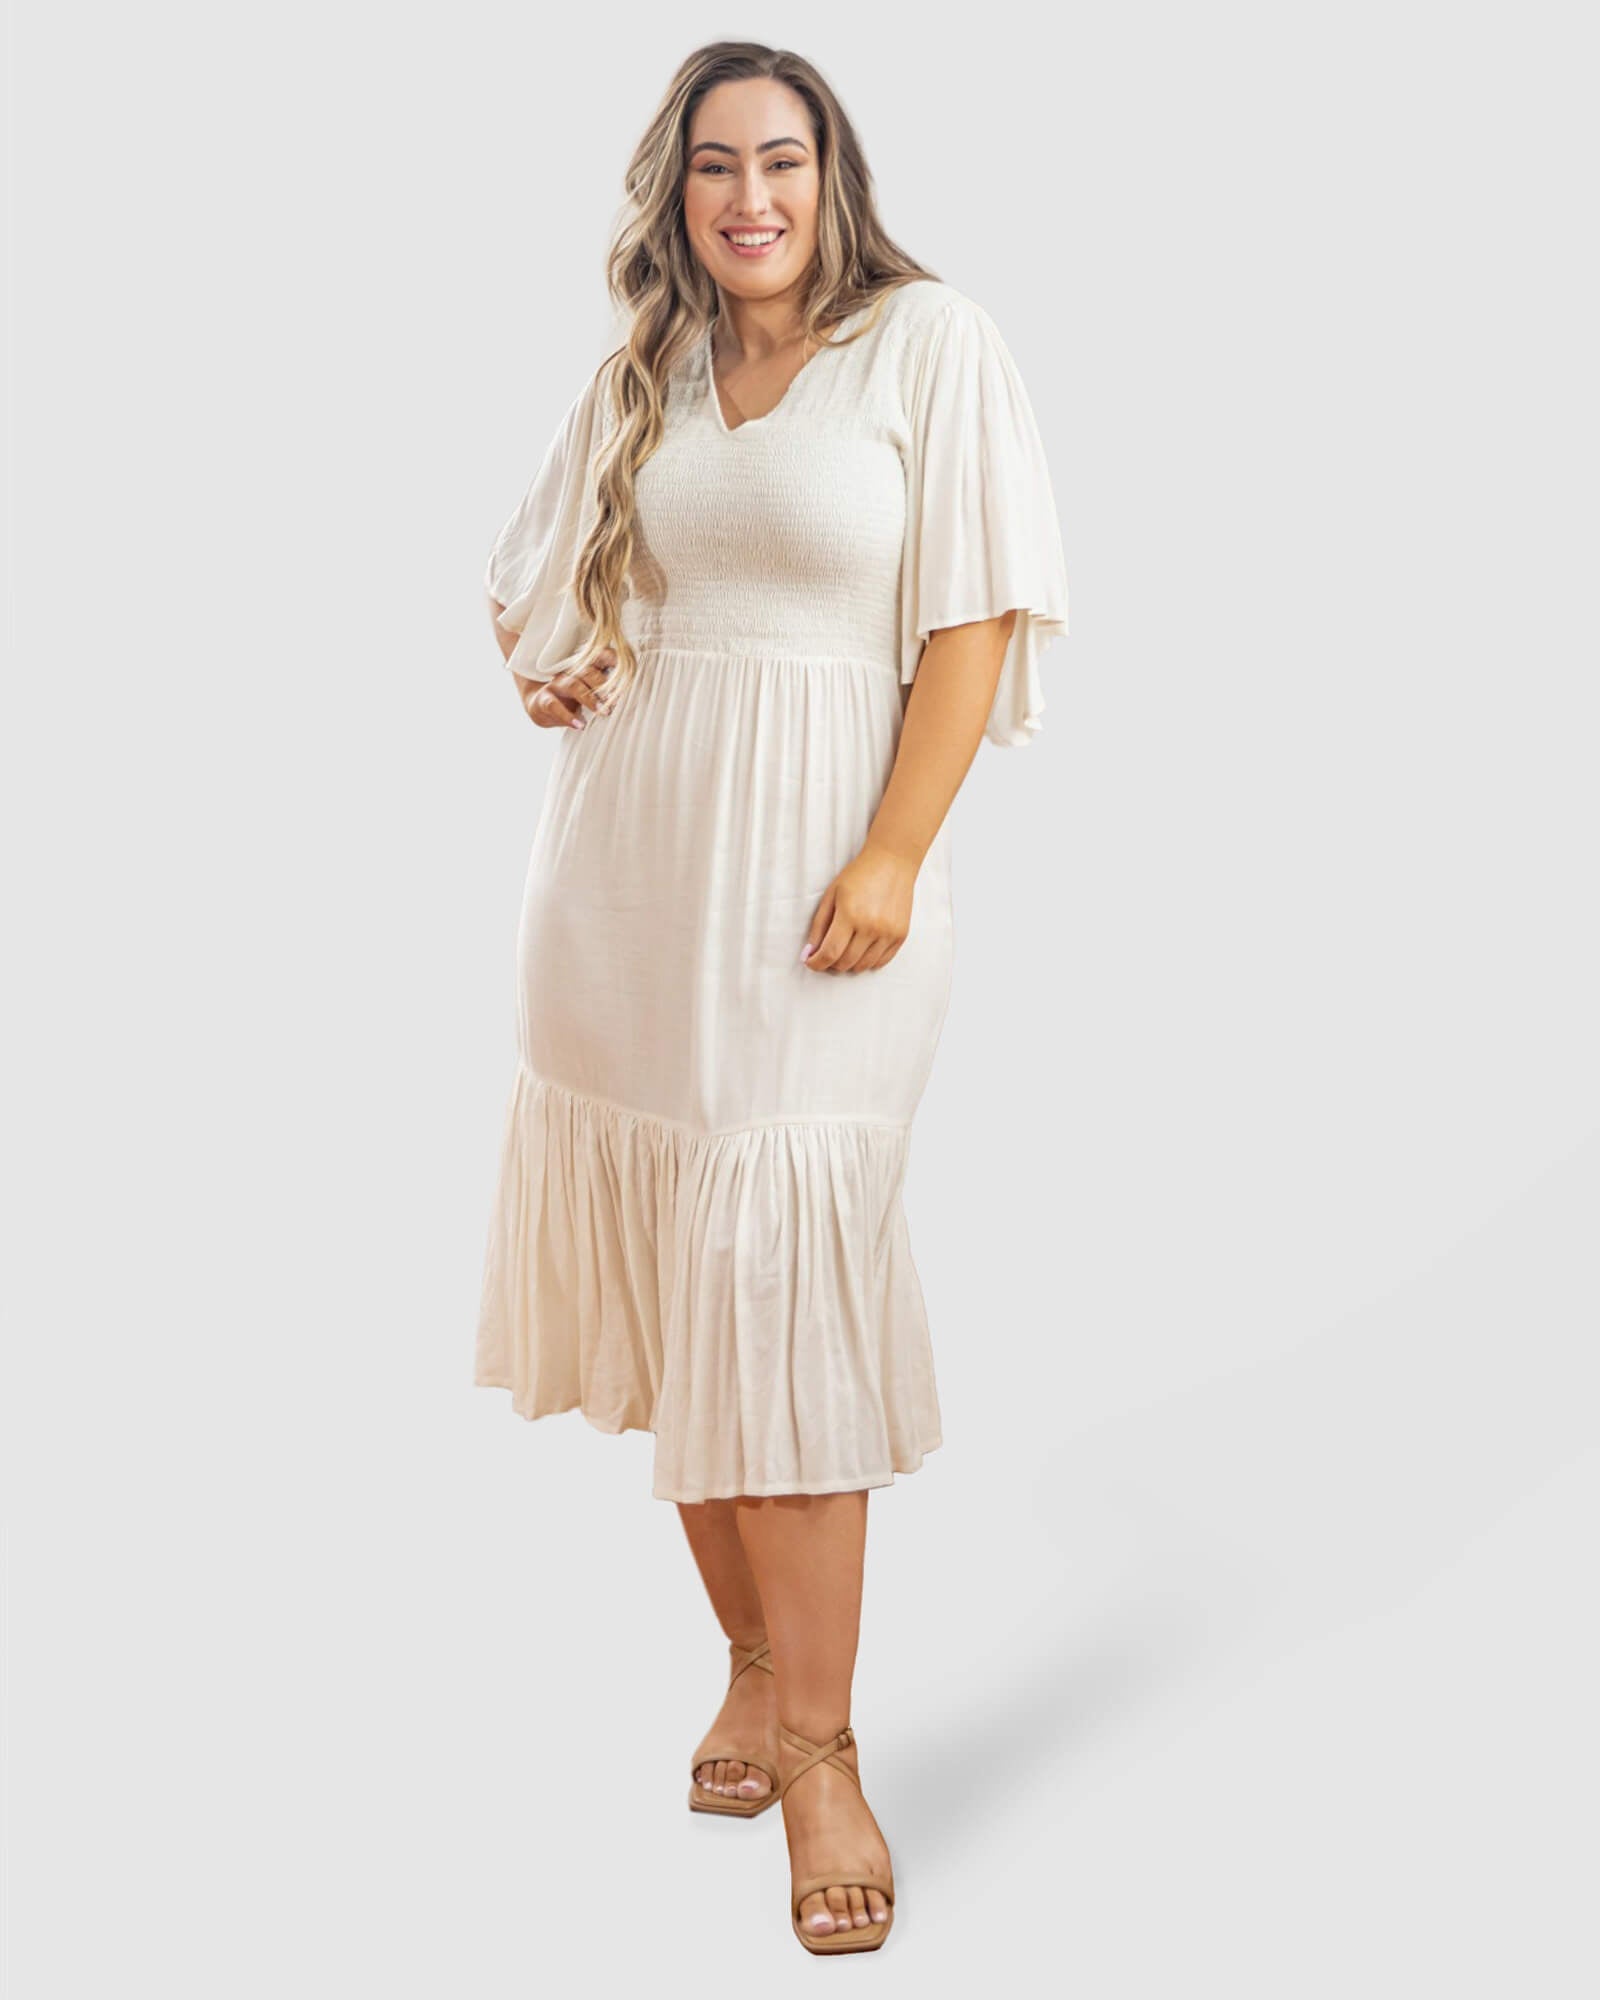 Cleo Short Sleeve Midi Dress in White - Dani Marie US